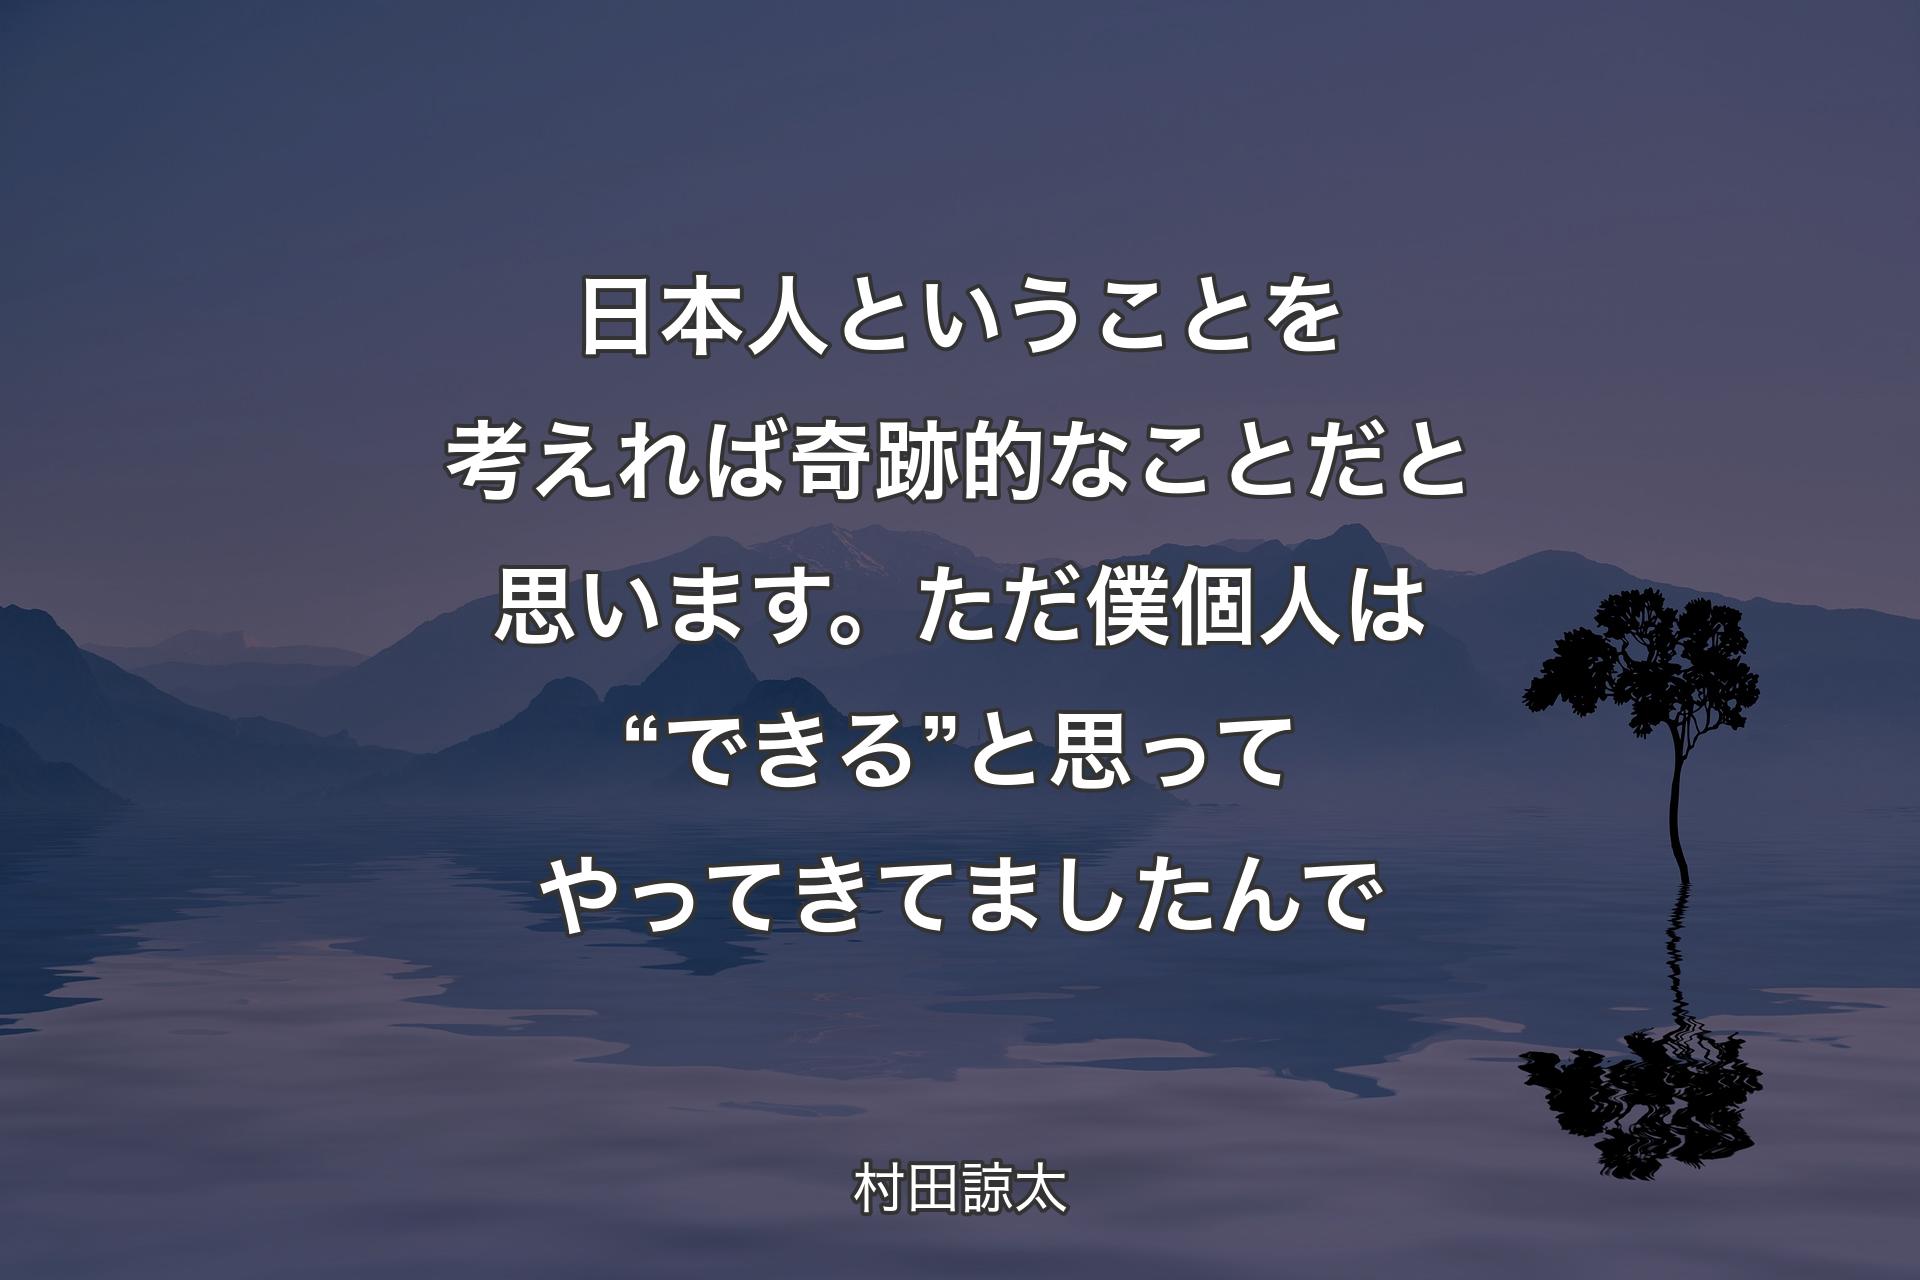 日本人ということを考えれば奇跡的なことだと思います。ただ僕個人は“できる”と思ってやってきてましたんで - 村田諒太